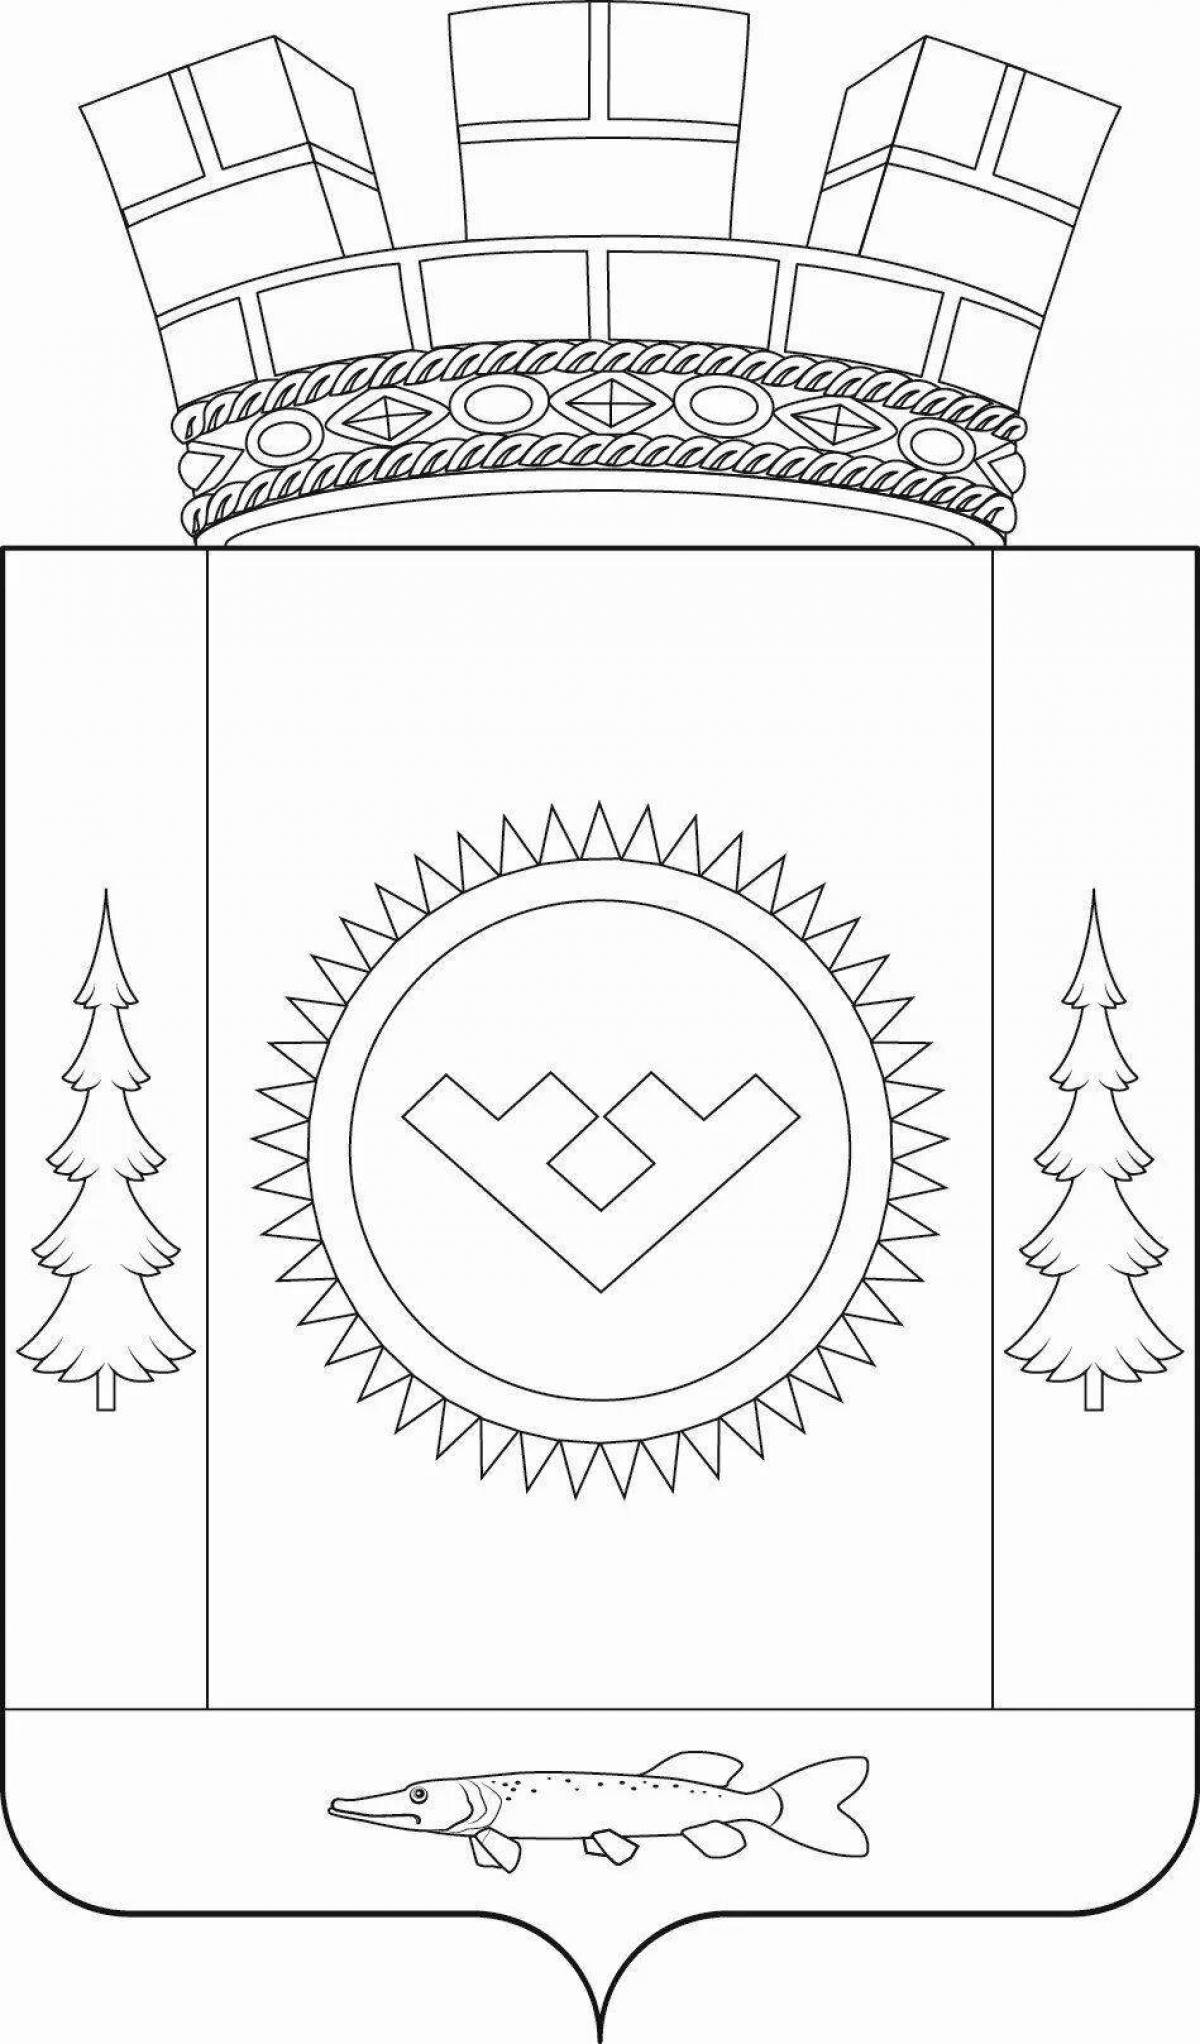 Раскраска роскошный герб екатеринбурга